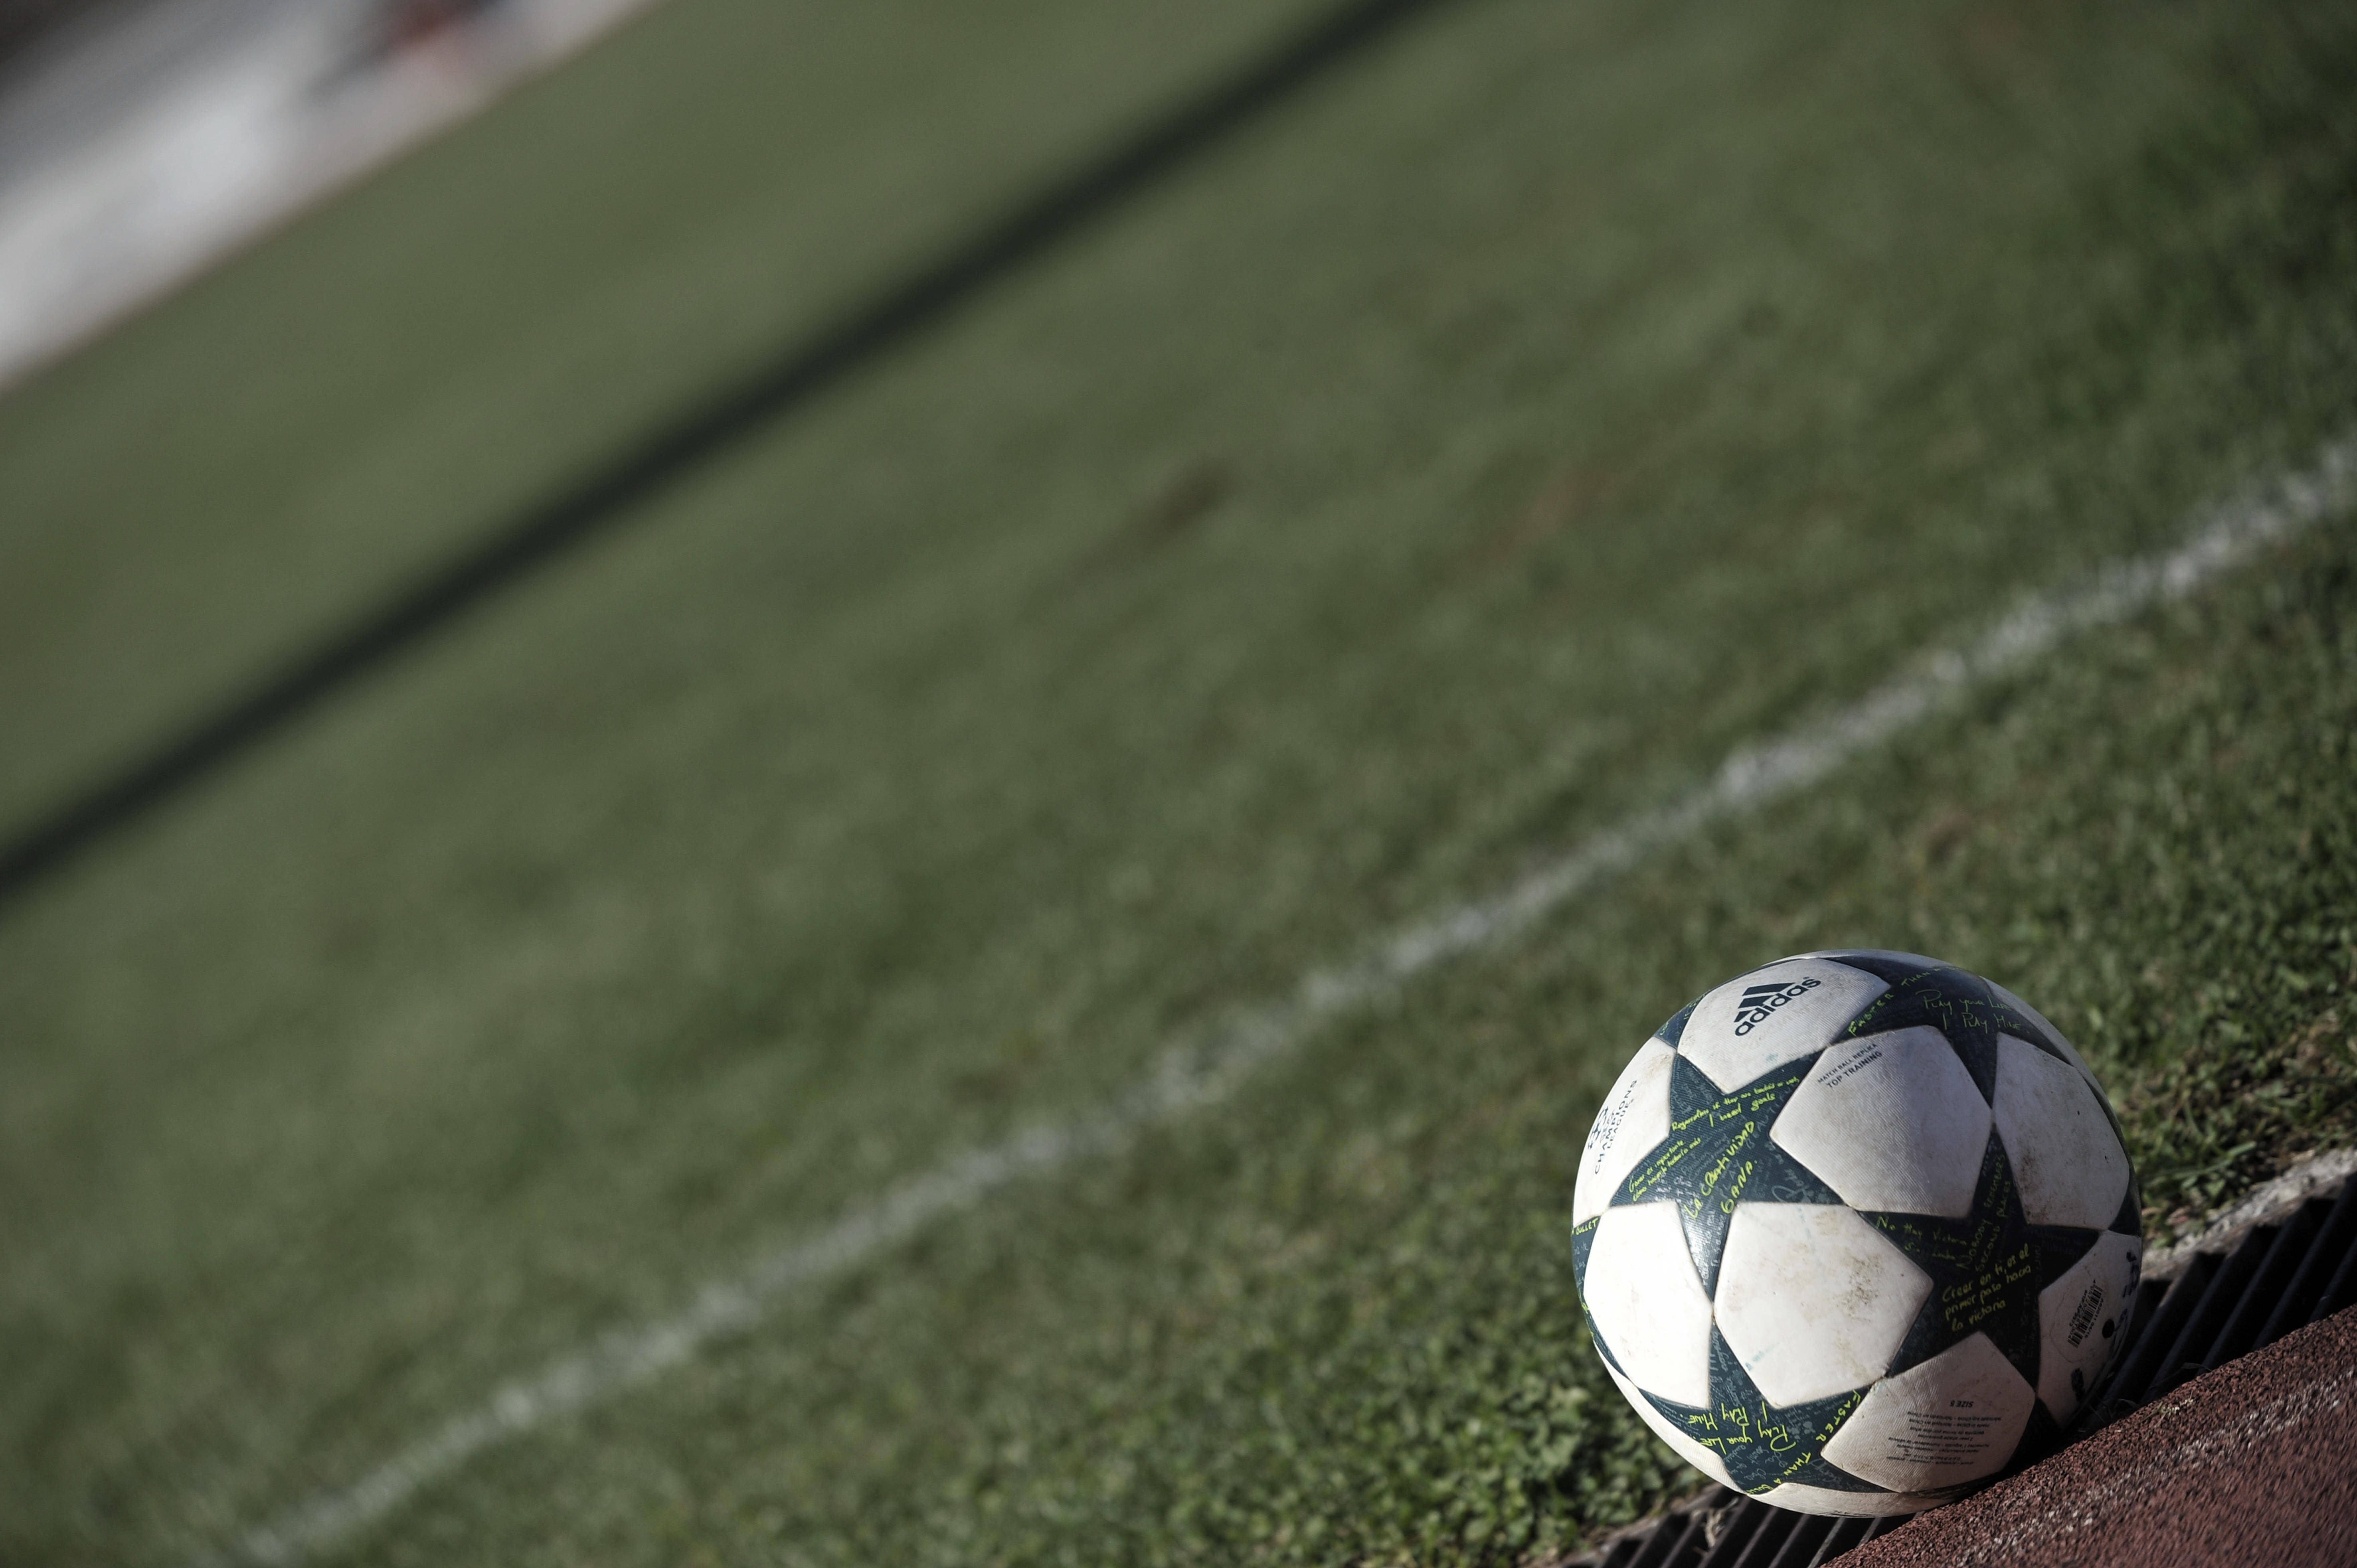 Κοροναϊός: Χάος στη Serie A! Άκυρη η αναβολή του πρωταθλήματος